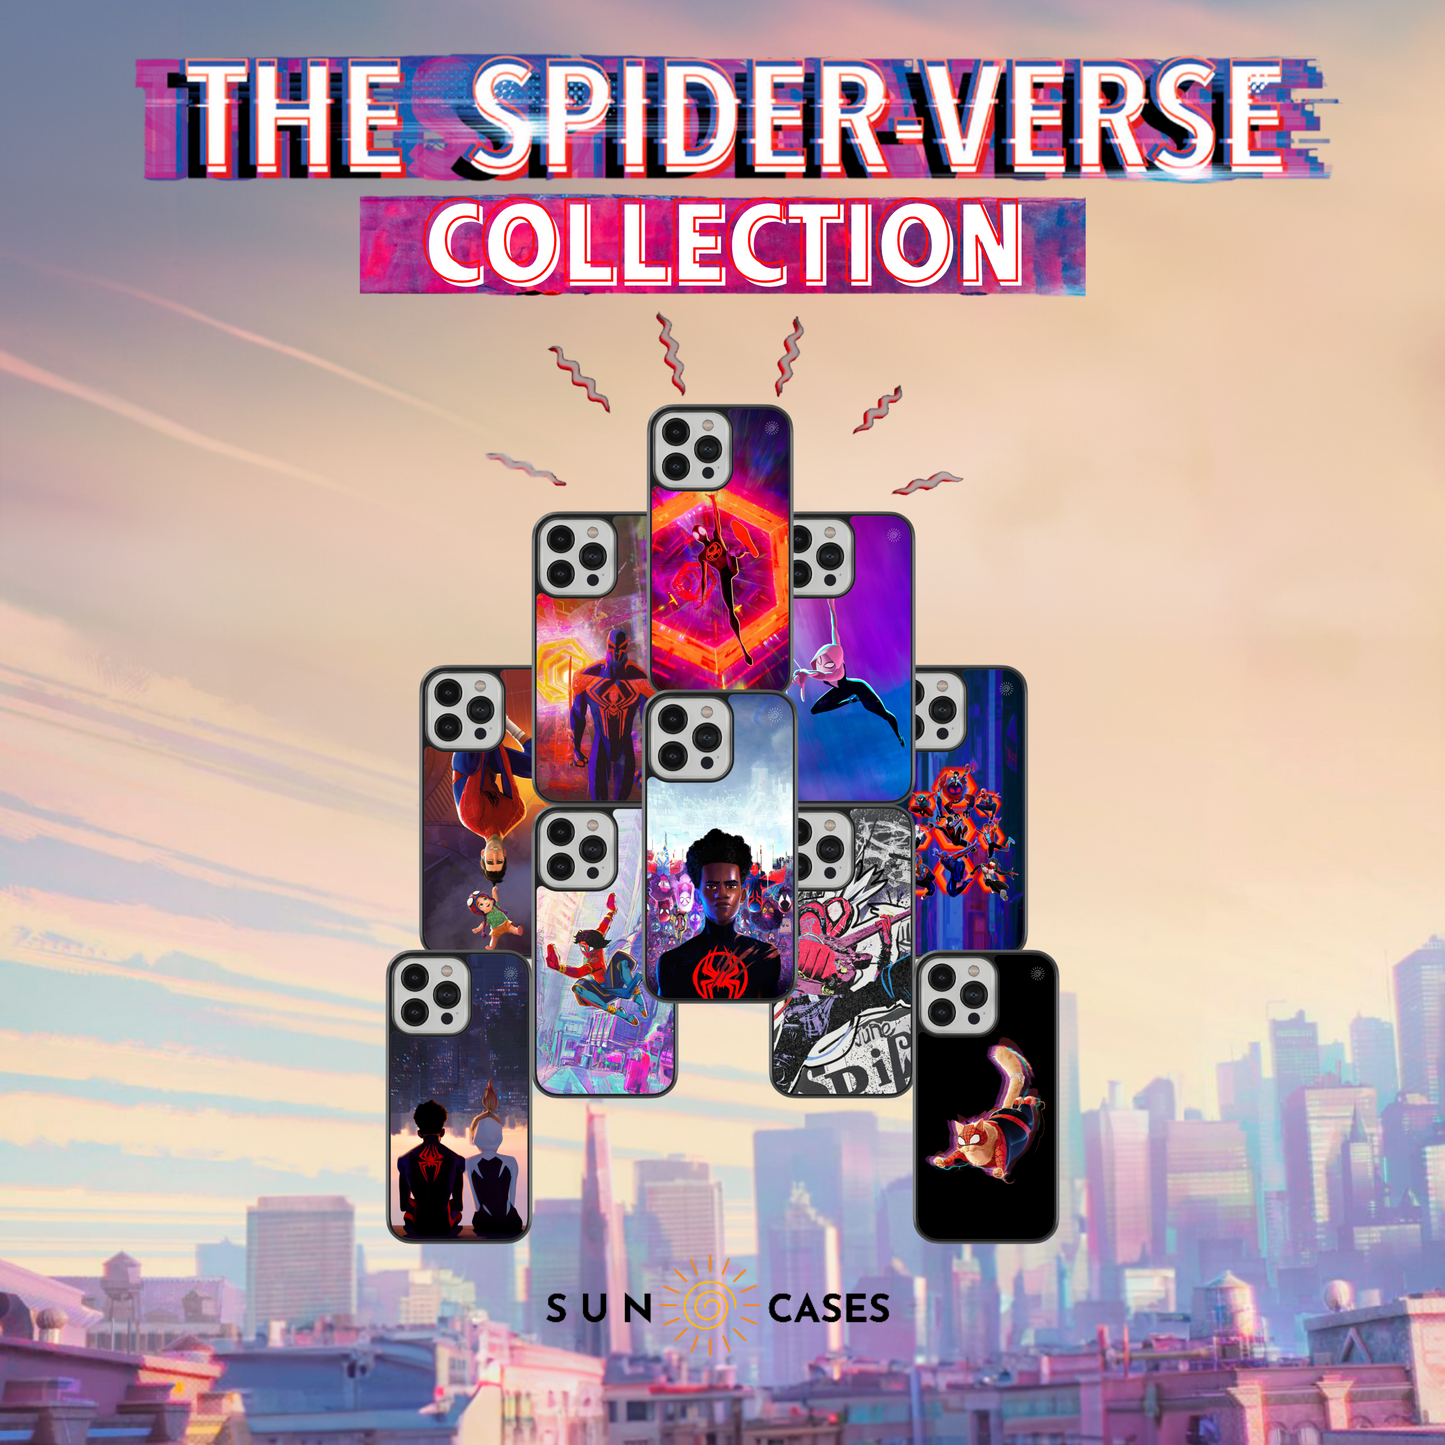 The Spider-Verse Collection - Spider-Gwen